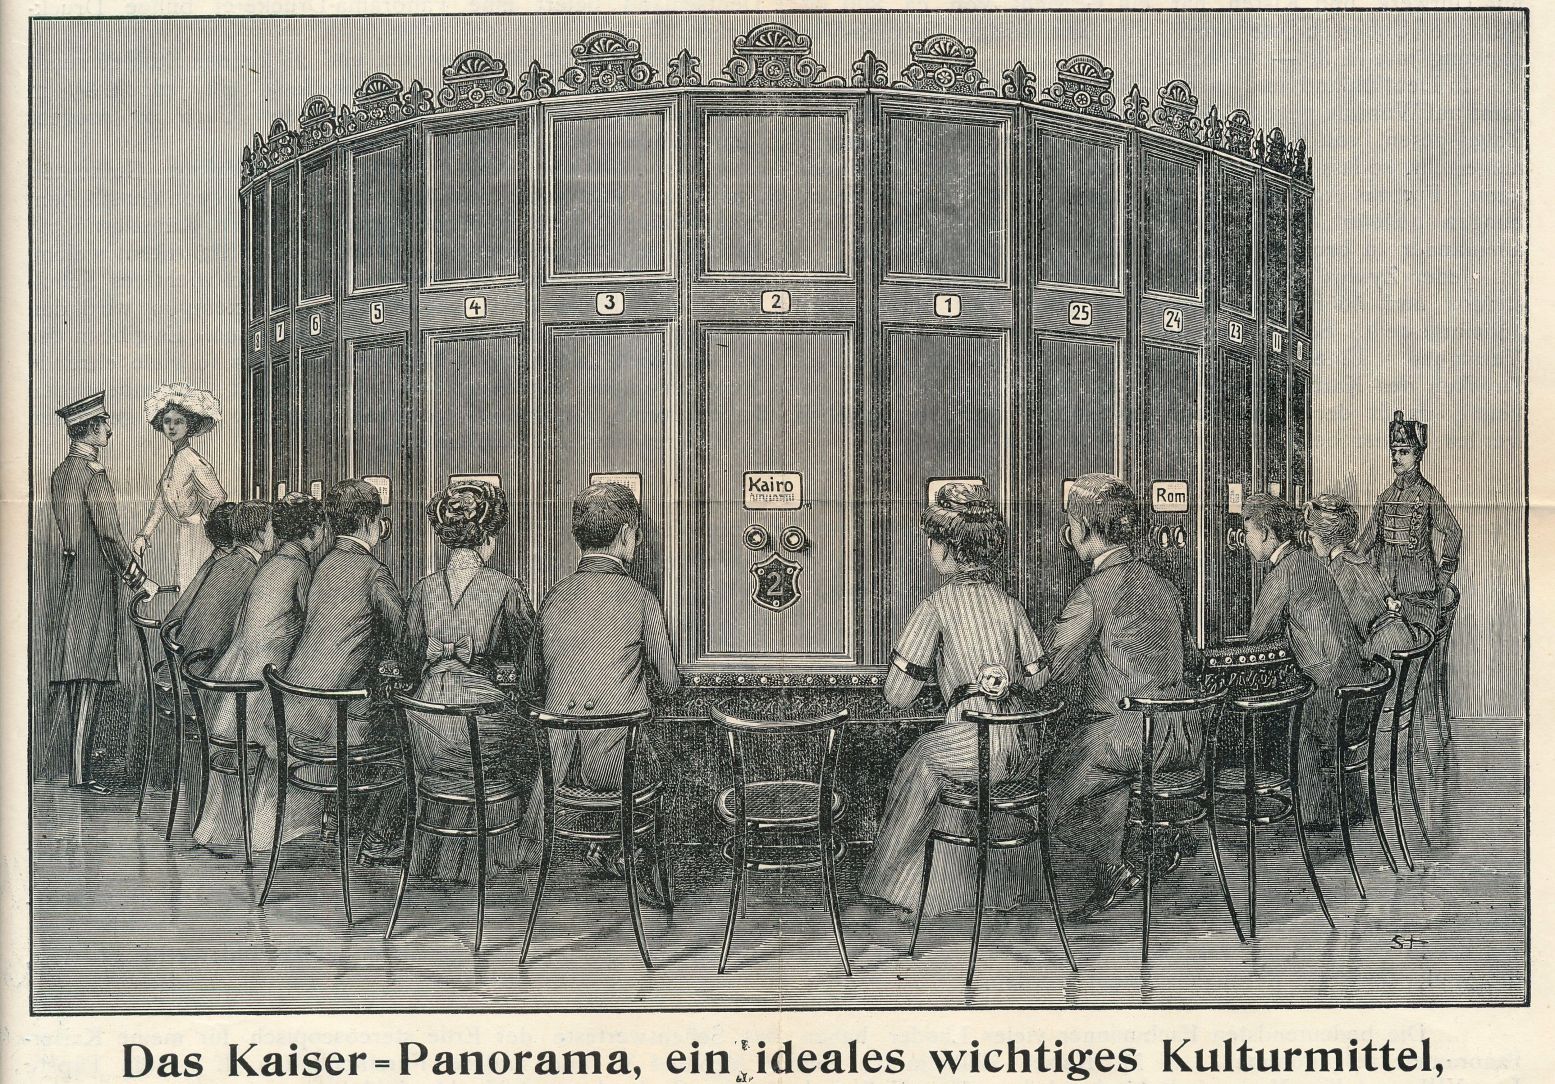 Een tekening van een Kaiserpanorama met 25 kijkplekken anno 1880. Foto: Alamy Stock Photo